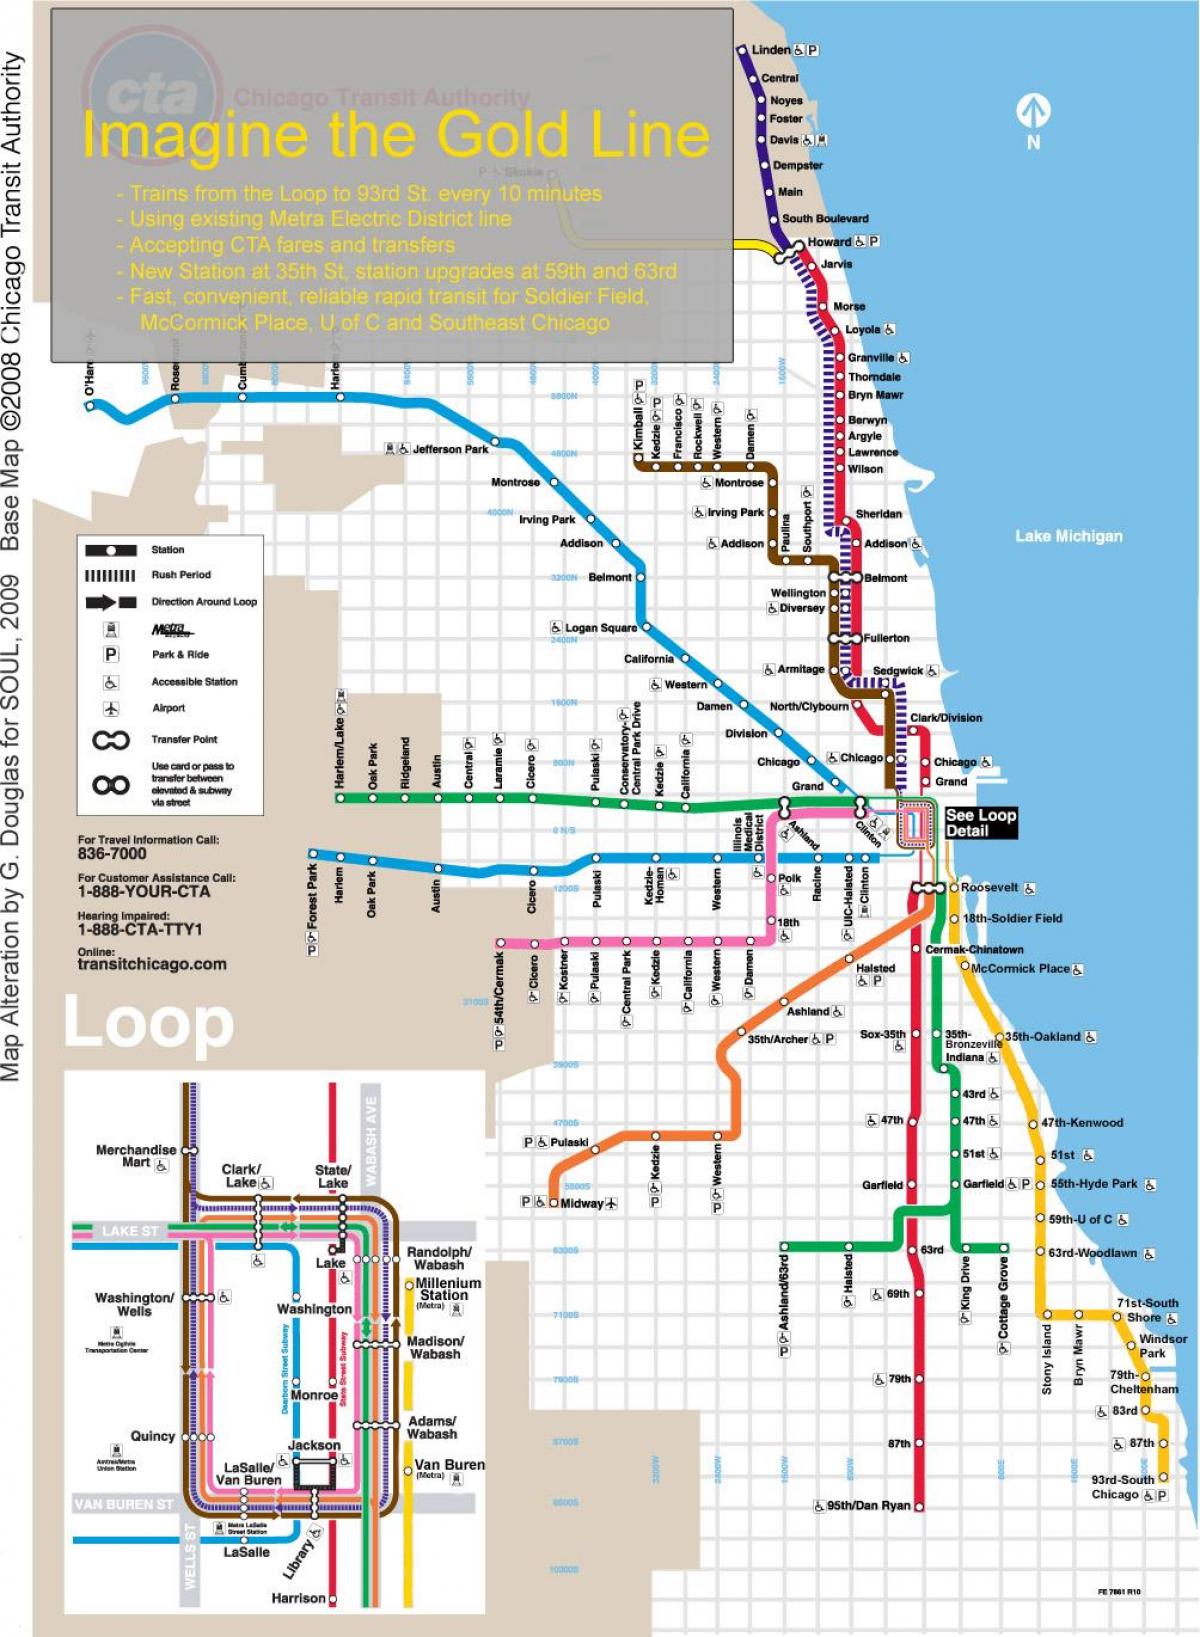 Чикаго воз мапата сина линија